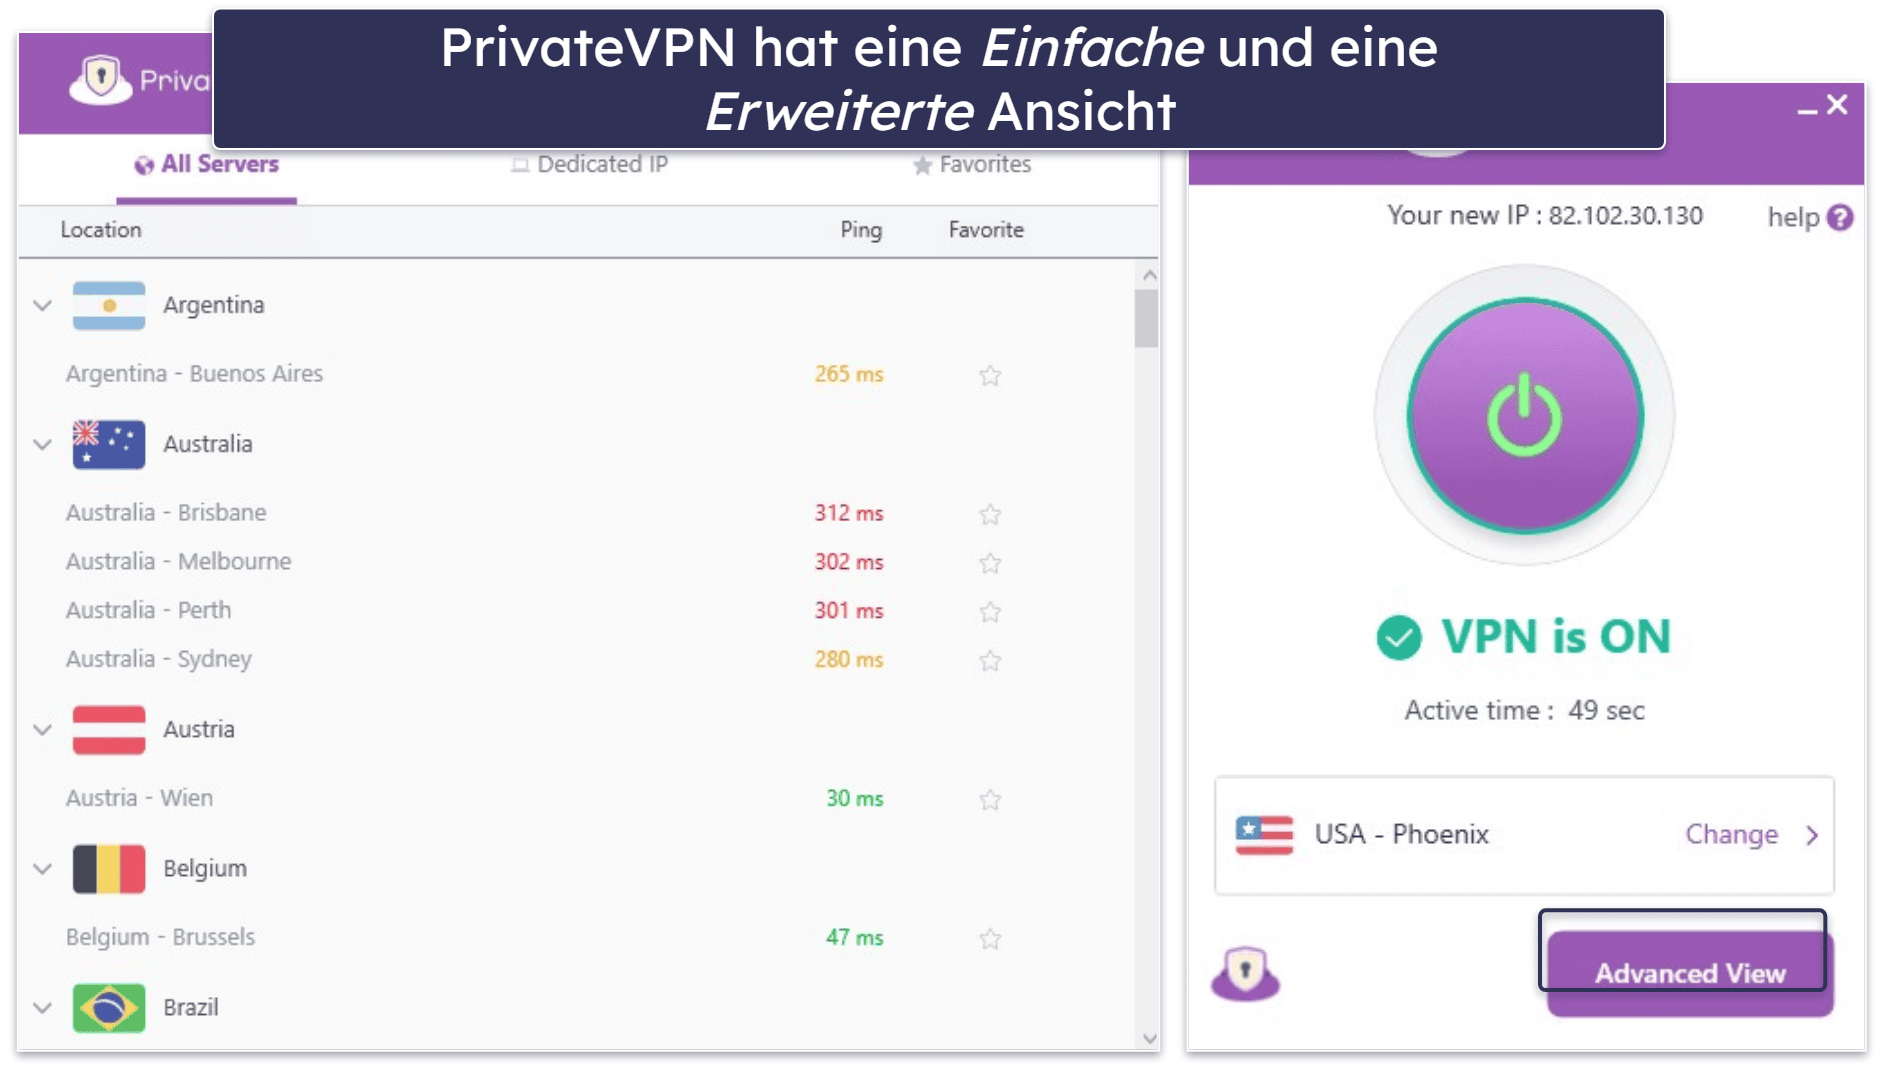 6. PrivateVPN – sehr intuitiv (gut für neue Anwender)